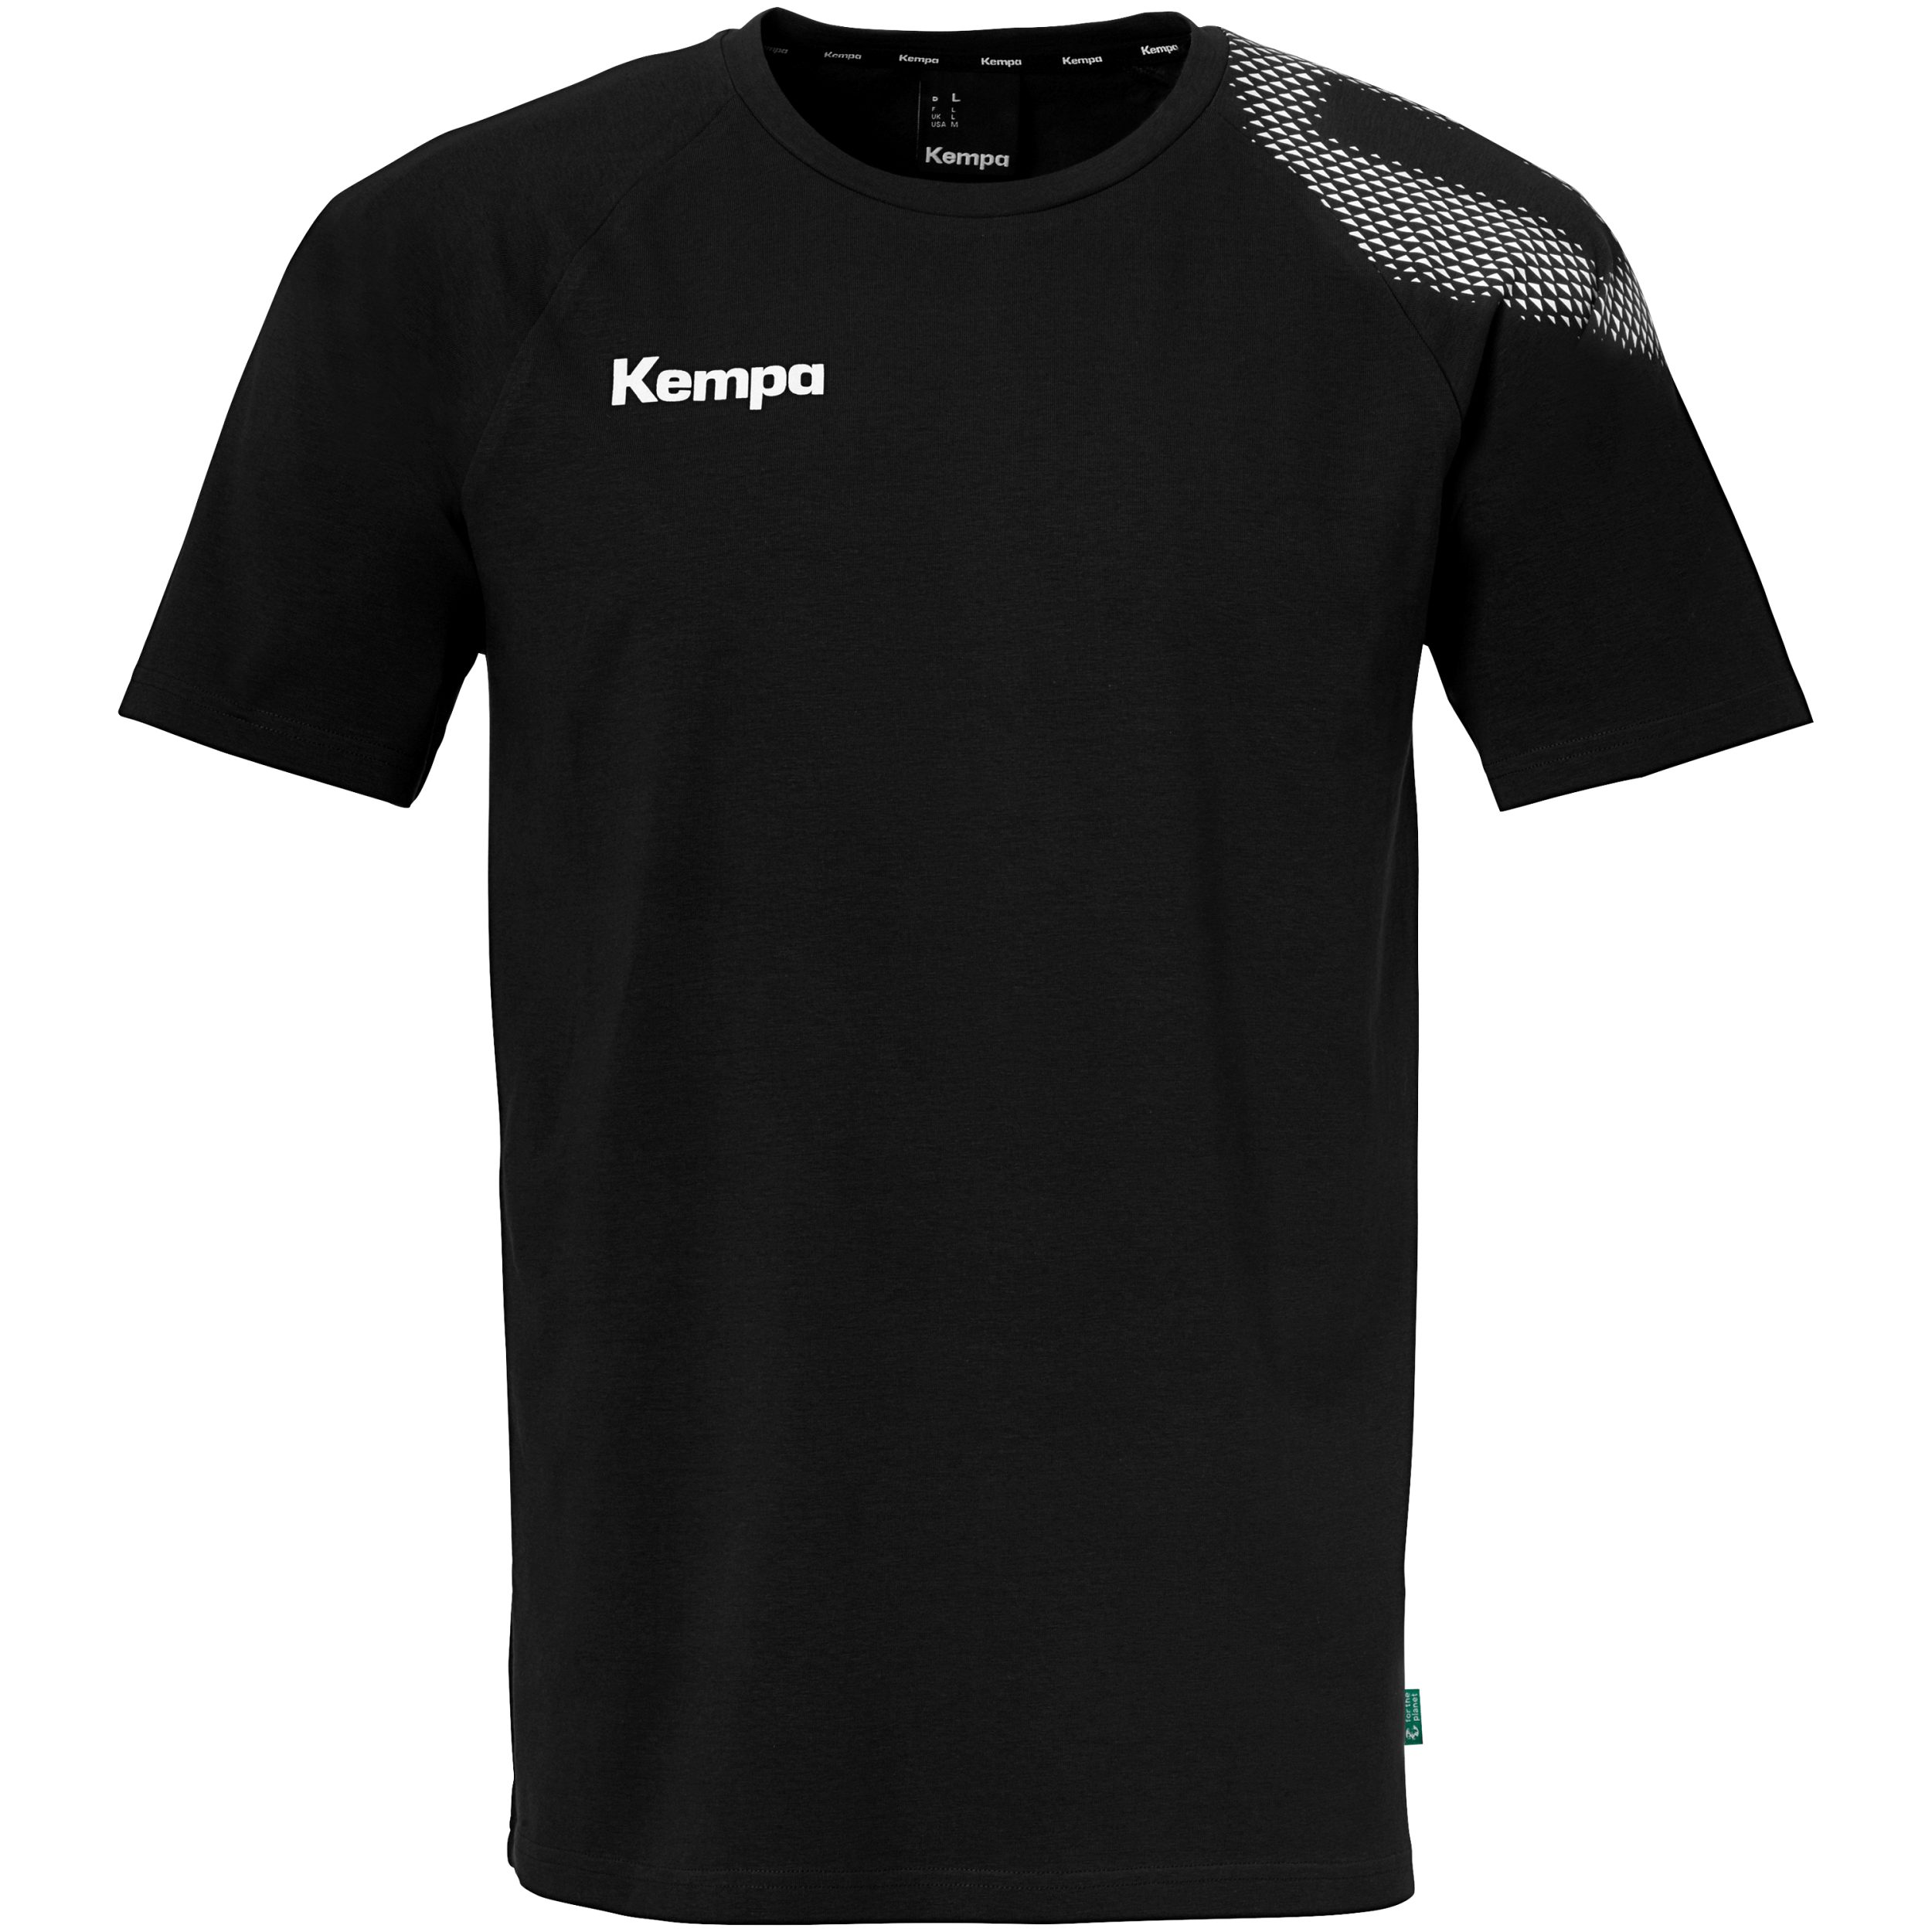 Kempa Kurzarmshirt CORE 26 T-SHIRT schwarz